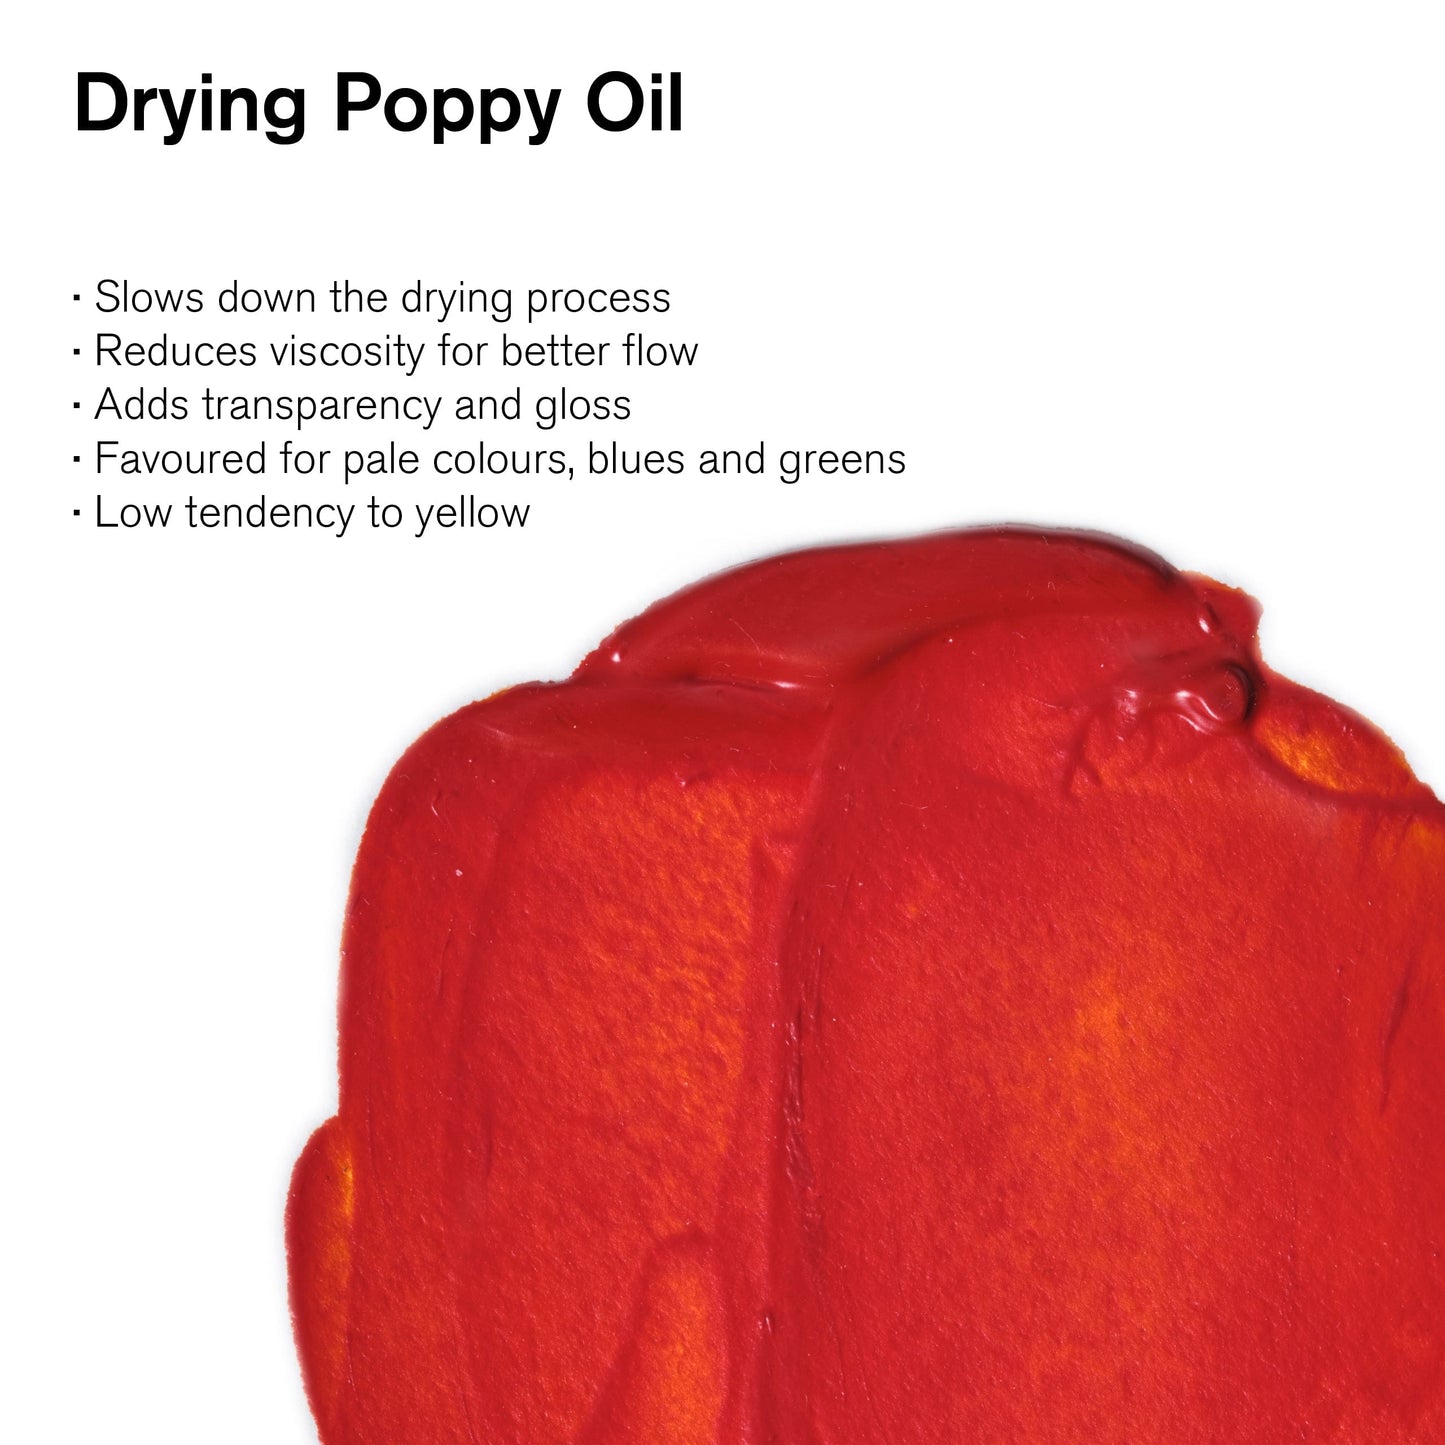 Winsor & Newton Oil Colour Medium Winsor & Newton - Drying Poppy Oil - 75mL Bottle - Item #2721743